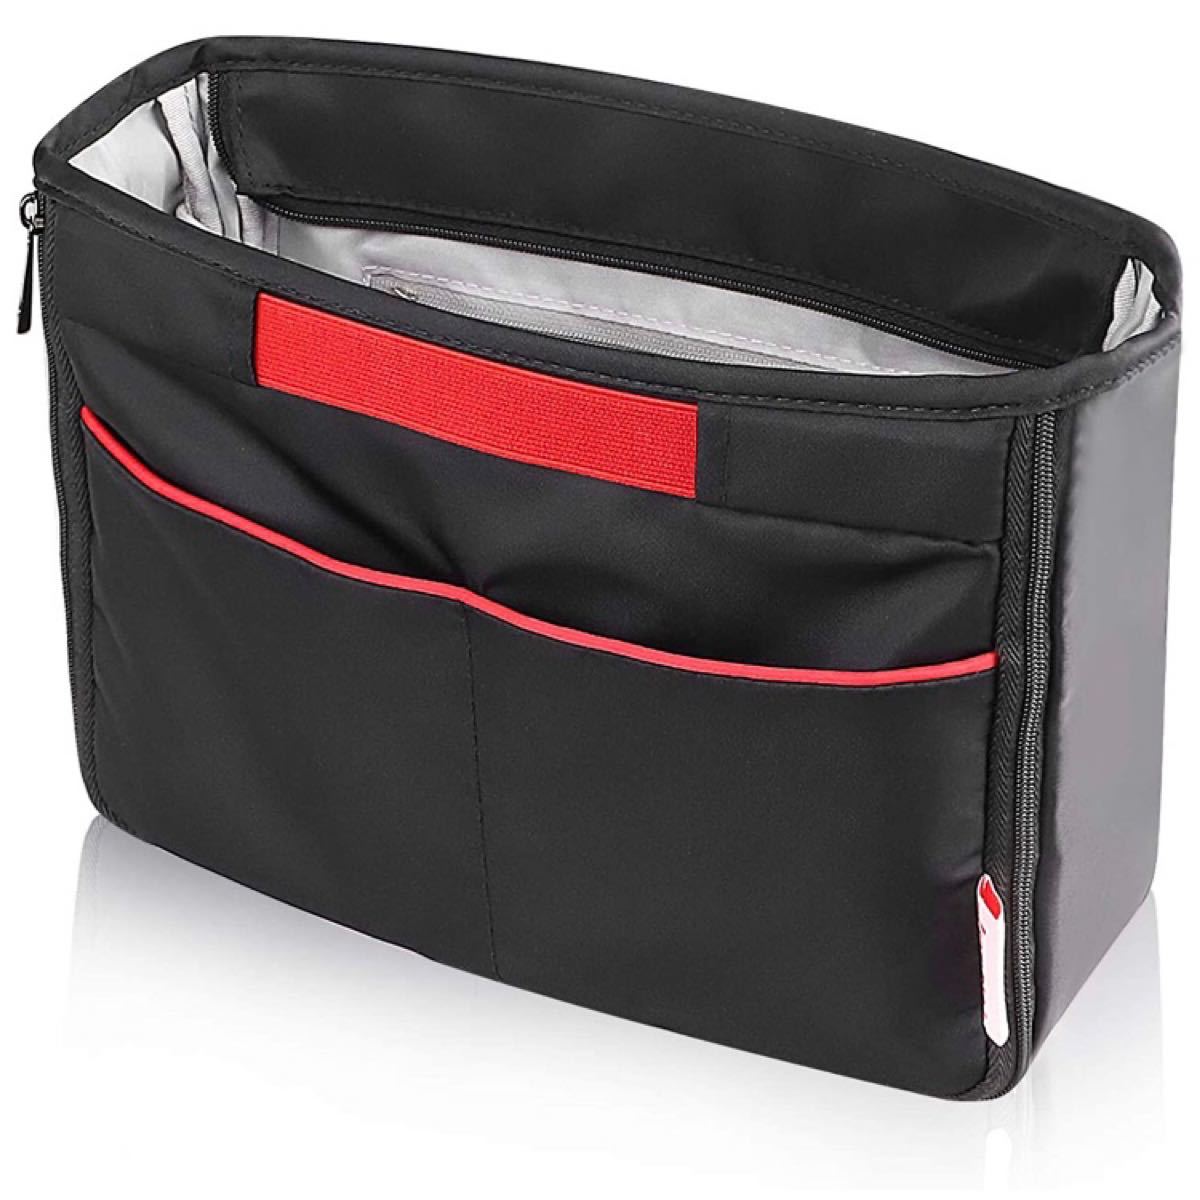 【新品】バッグインバッグ 軽量 インナーバッグ 拡張可能 トートバック用 大容量